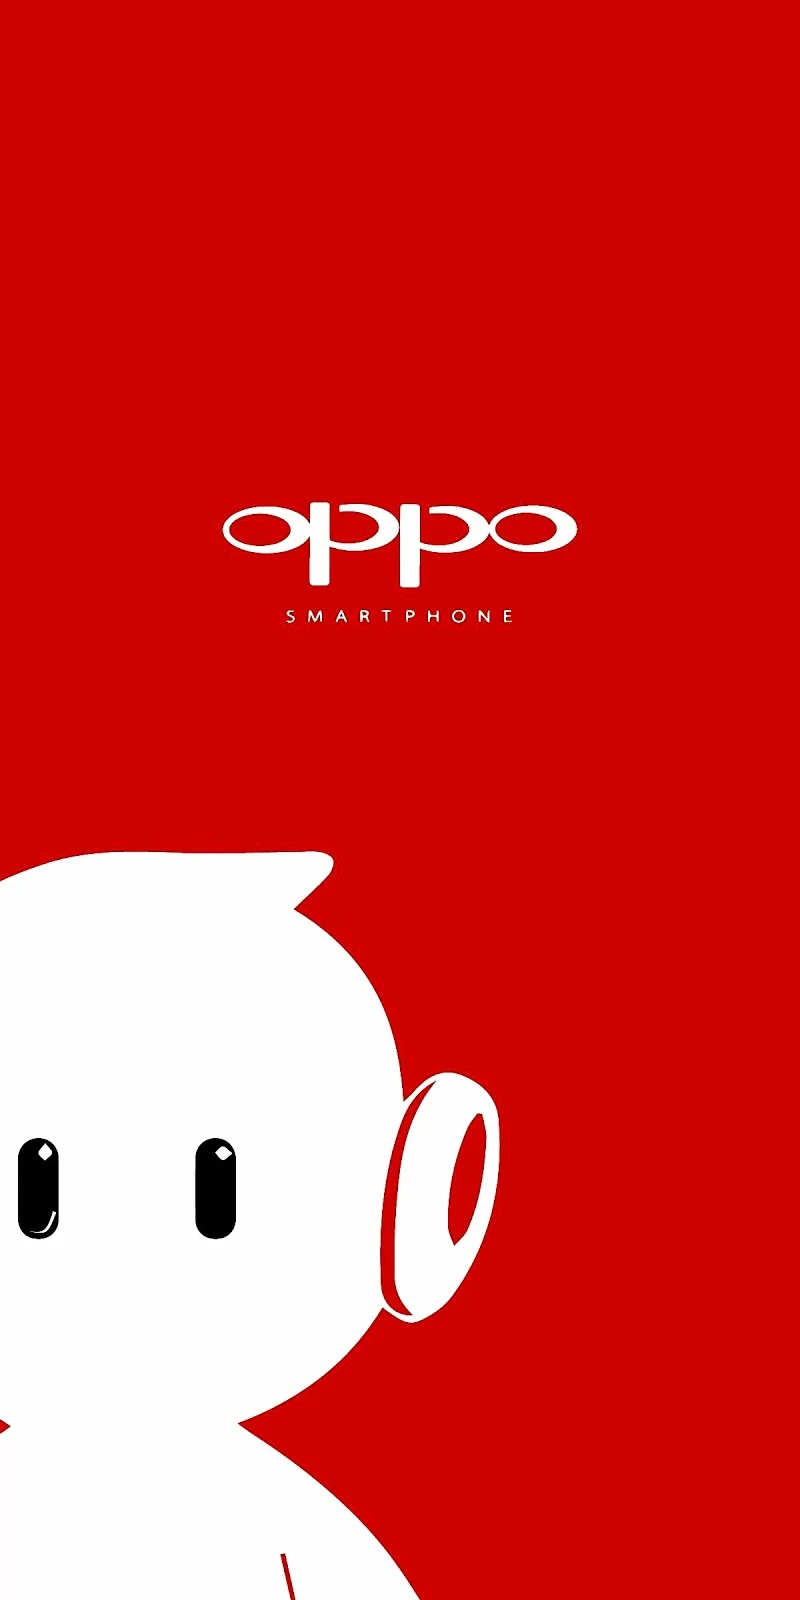 Phone logo oppo red